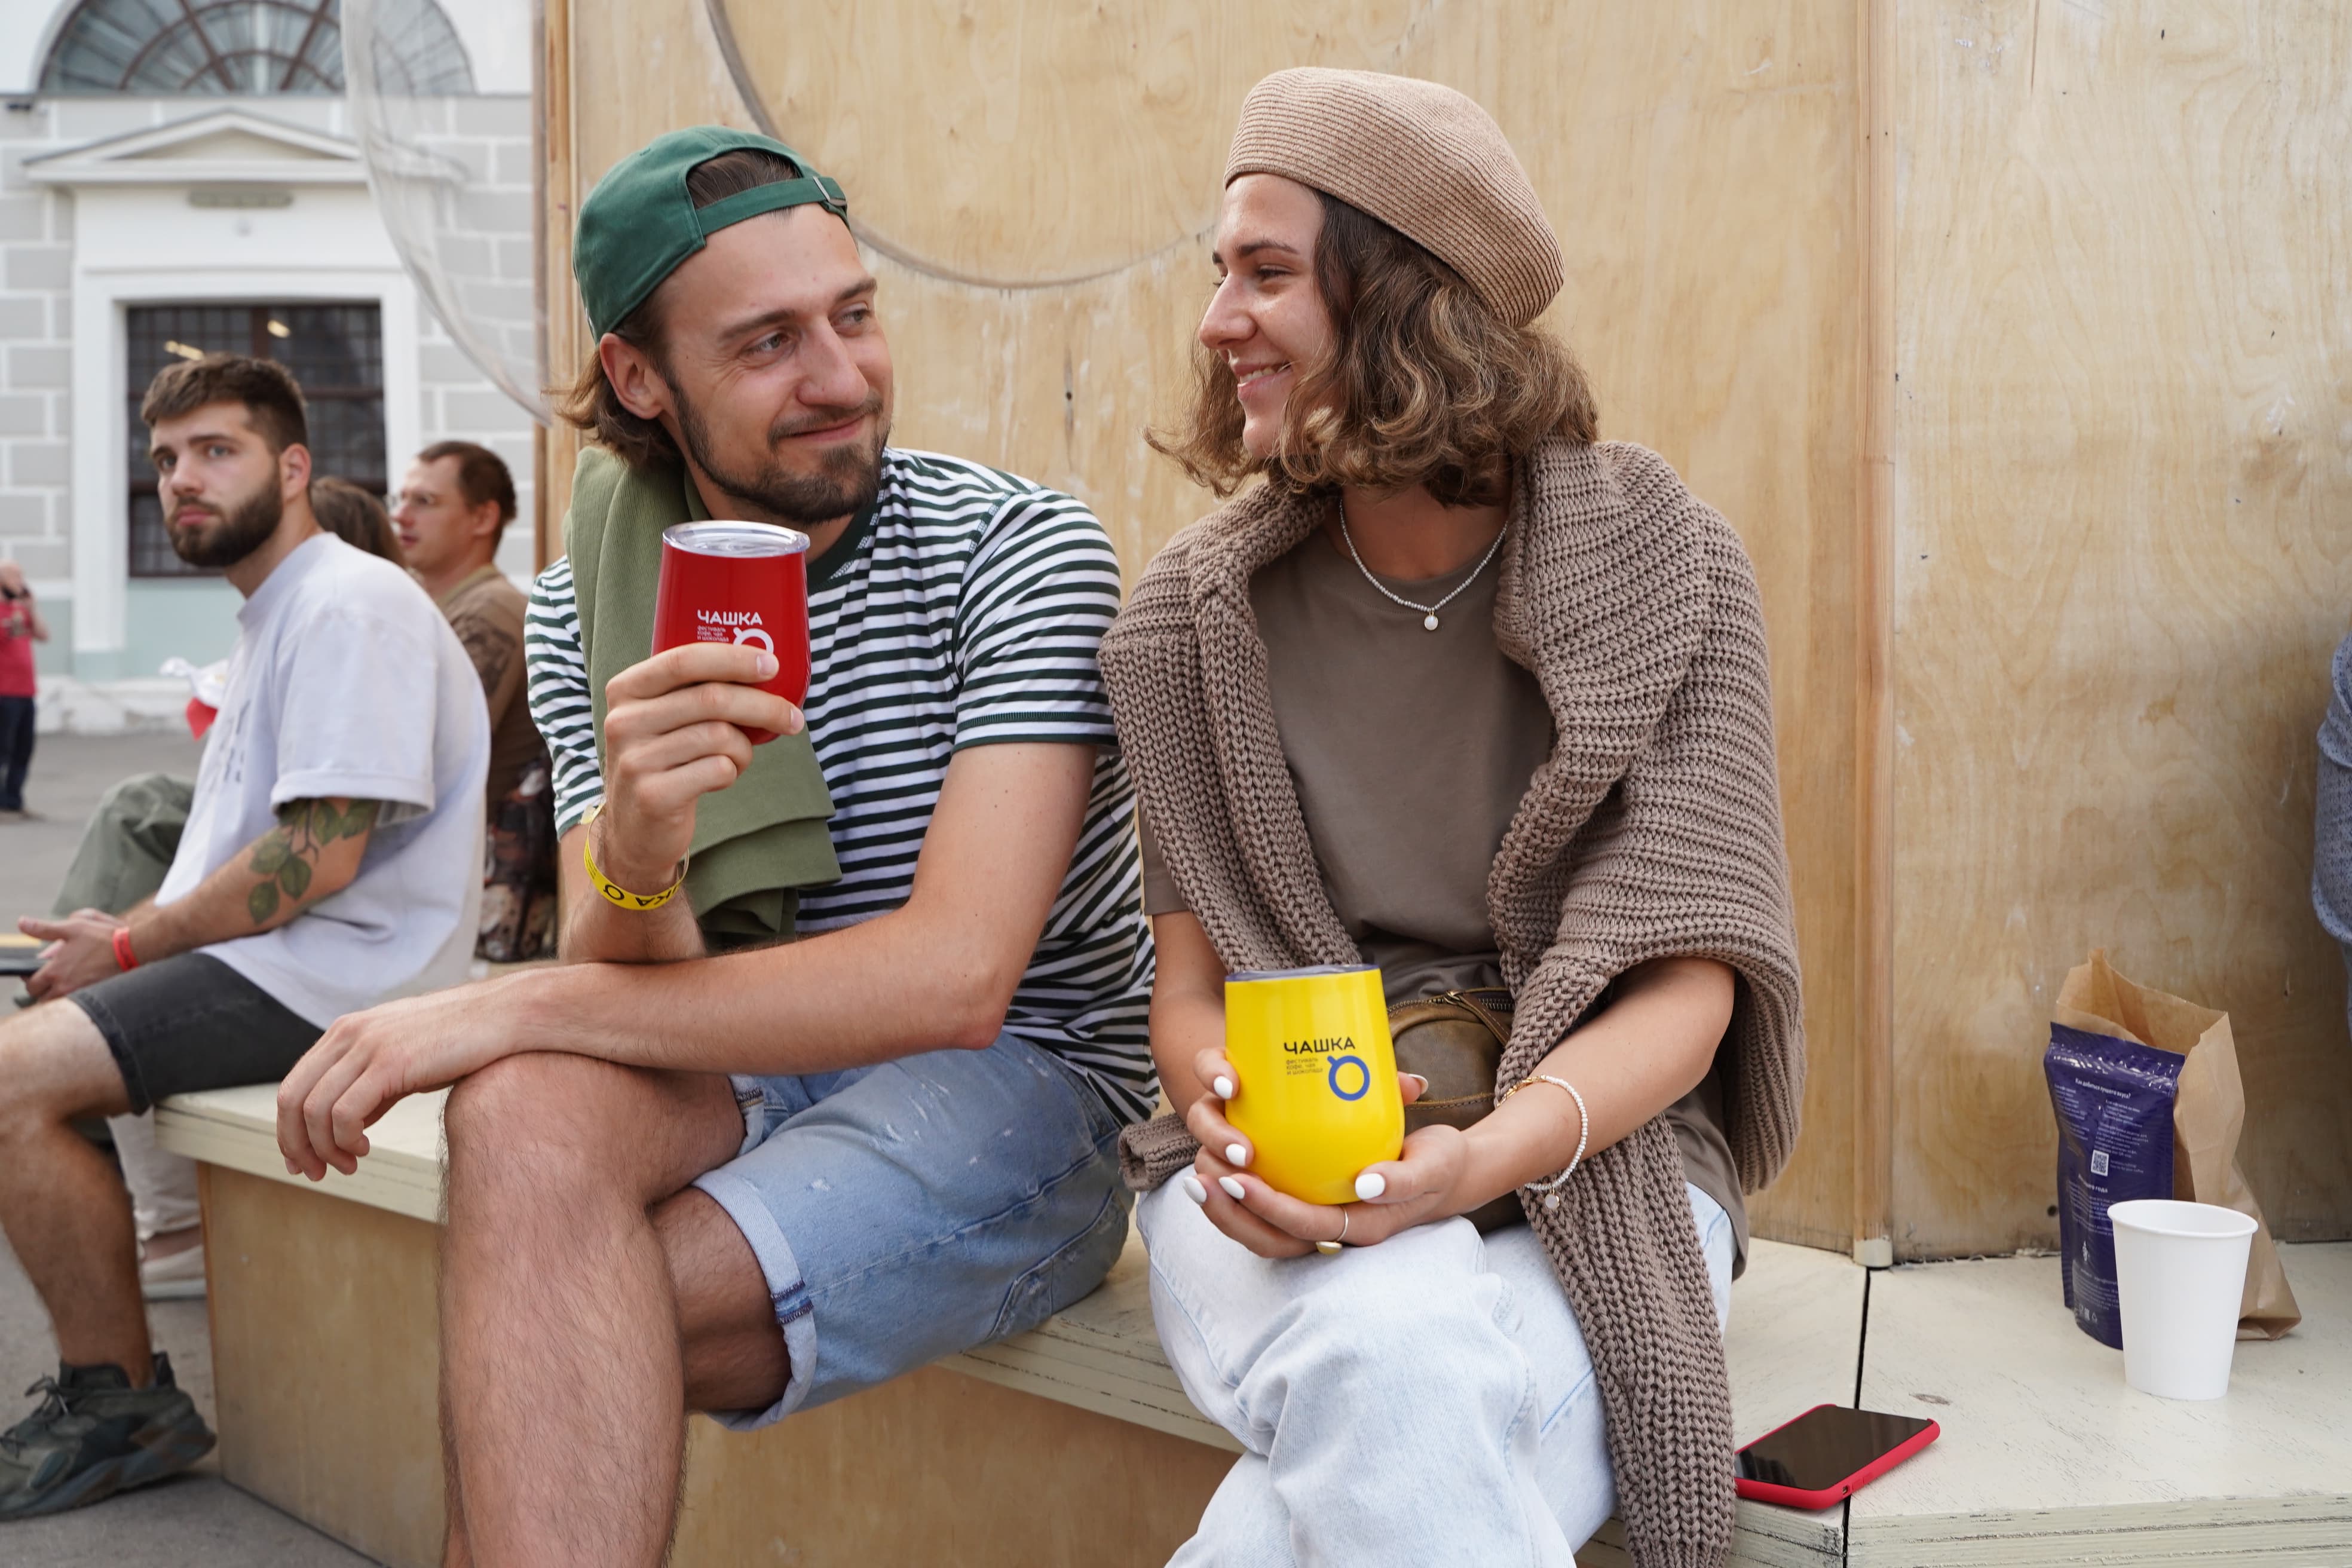 Фестиваль «Чашка» – яркое событие для любителей кофе, чая и шоколада |  Retail.ru